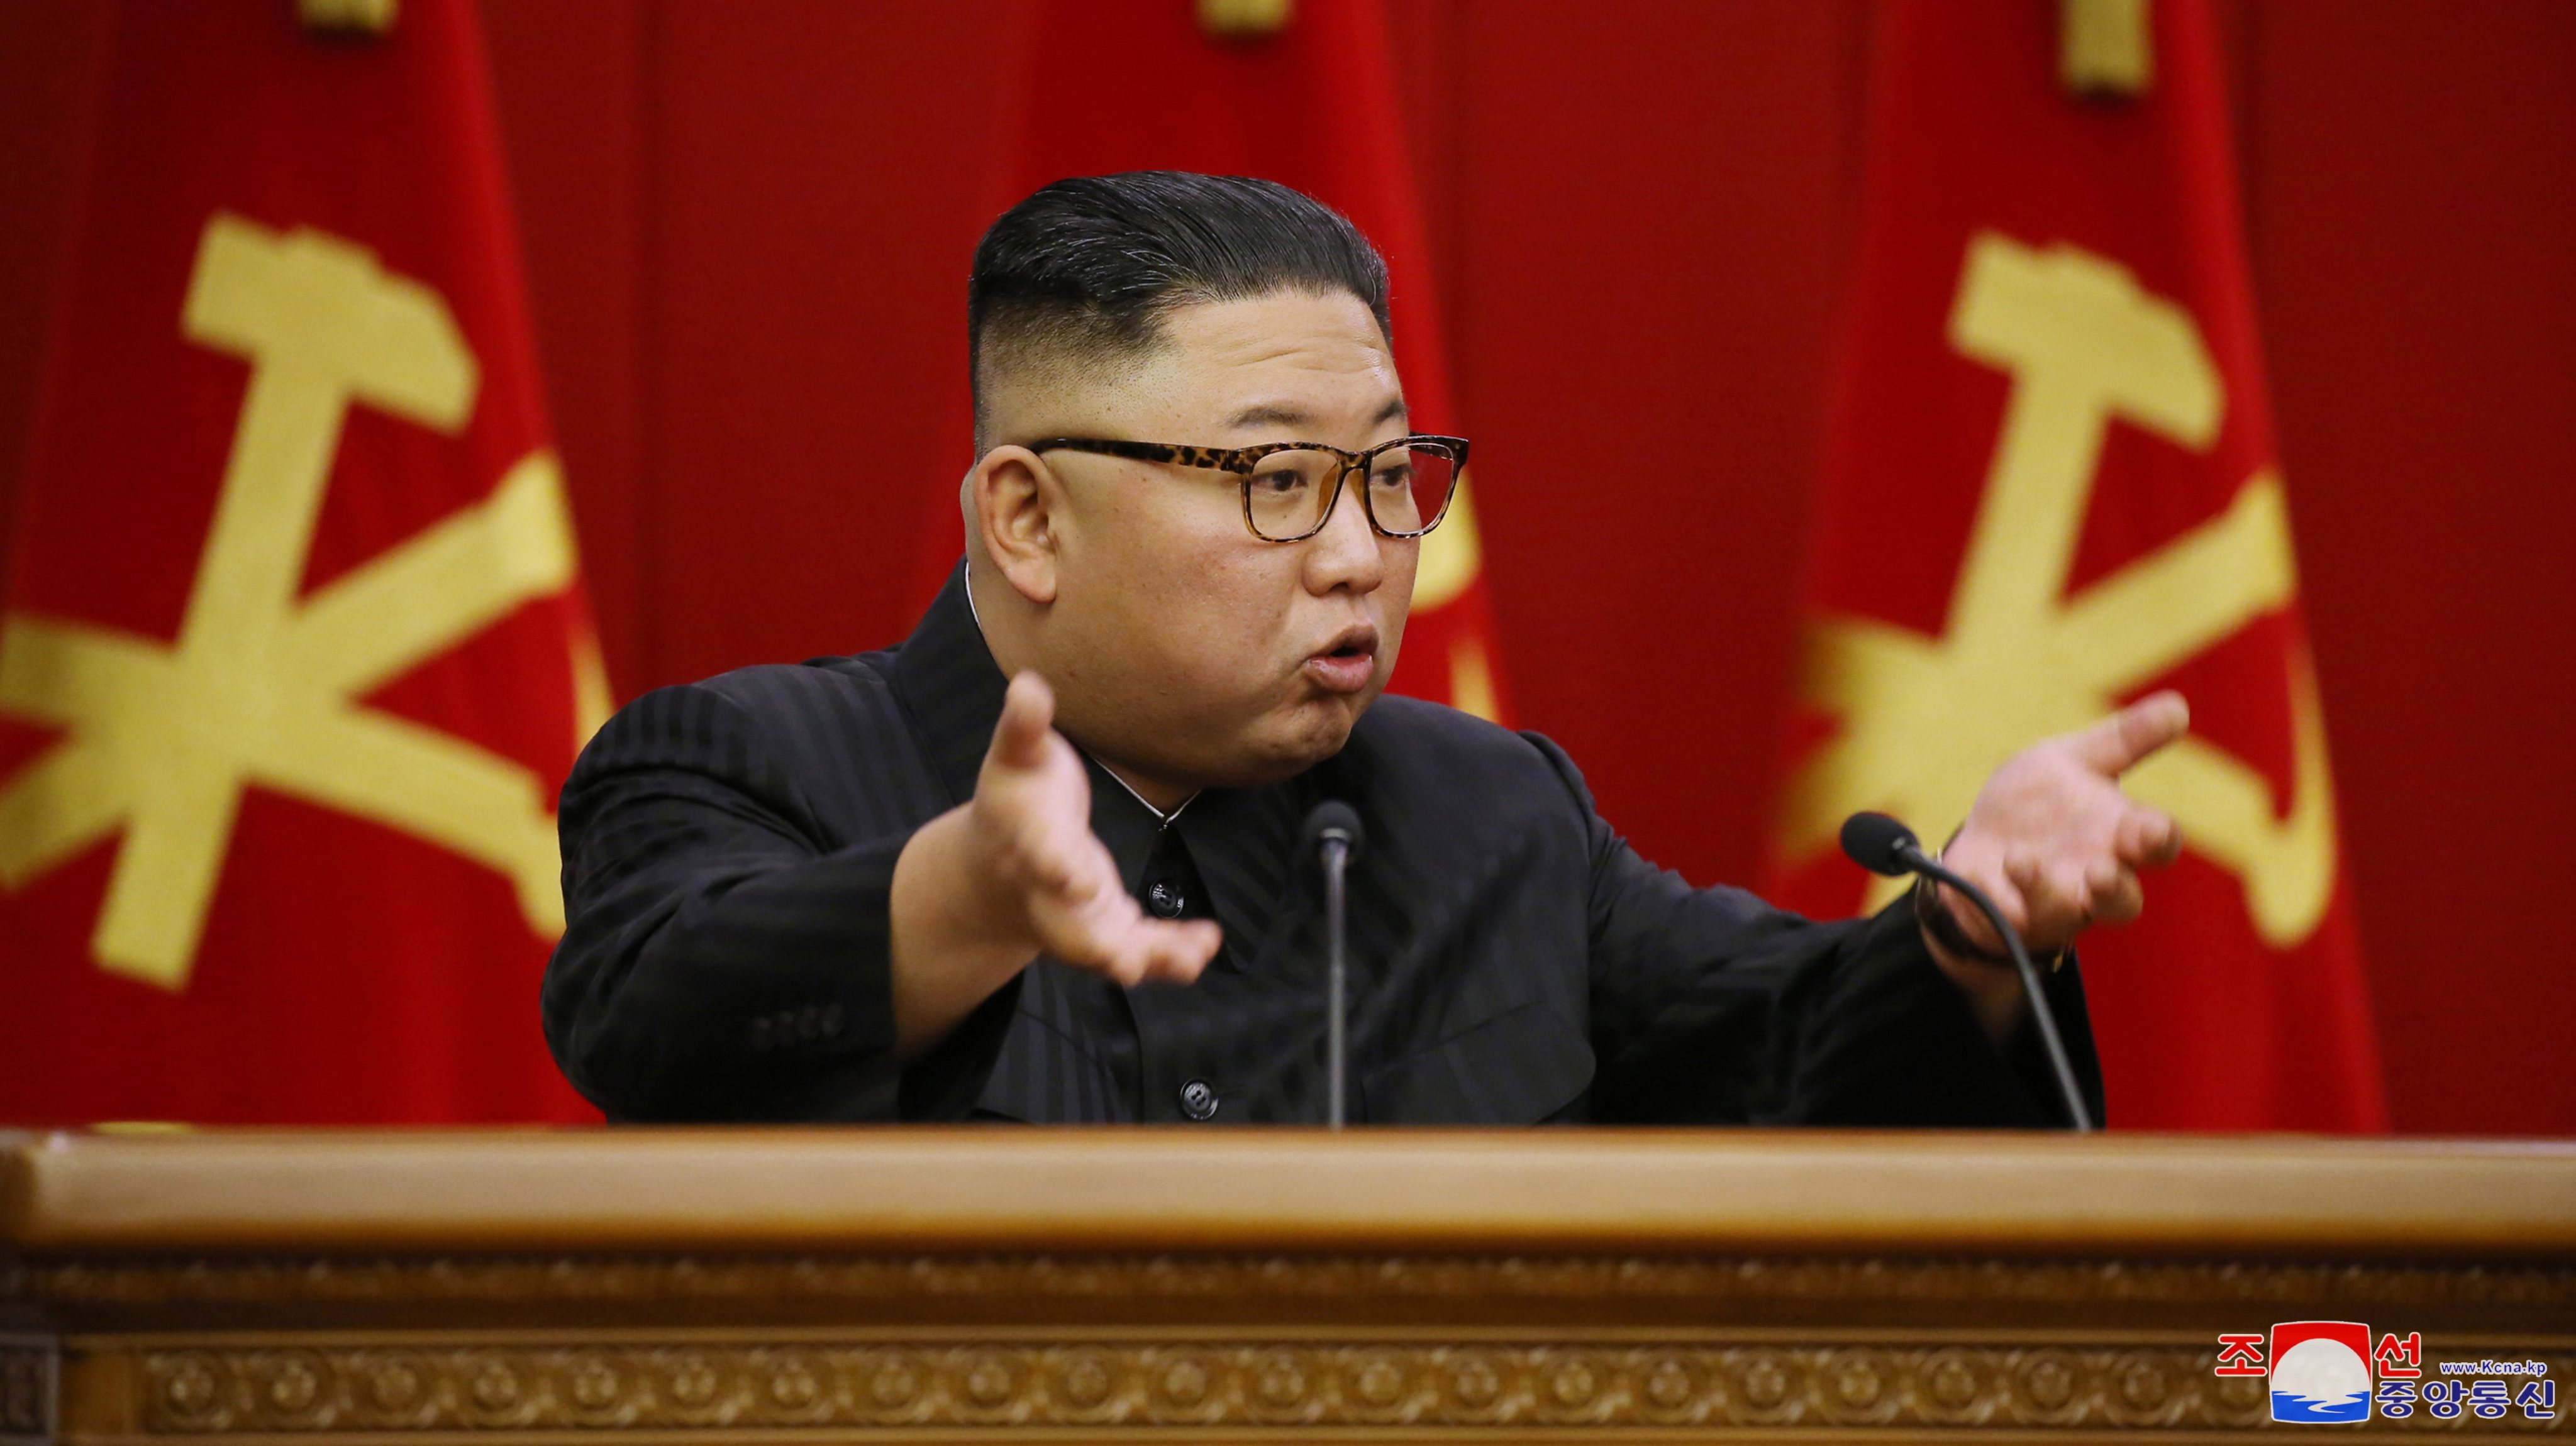 Apesar de alguns sinais de aproximação, Kim Jong-un diz que Coreia do Sul tem uma “ambição imprudente”